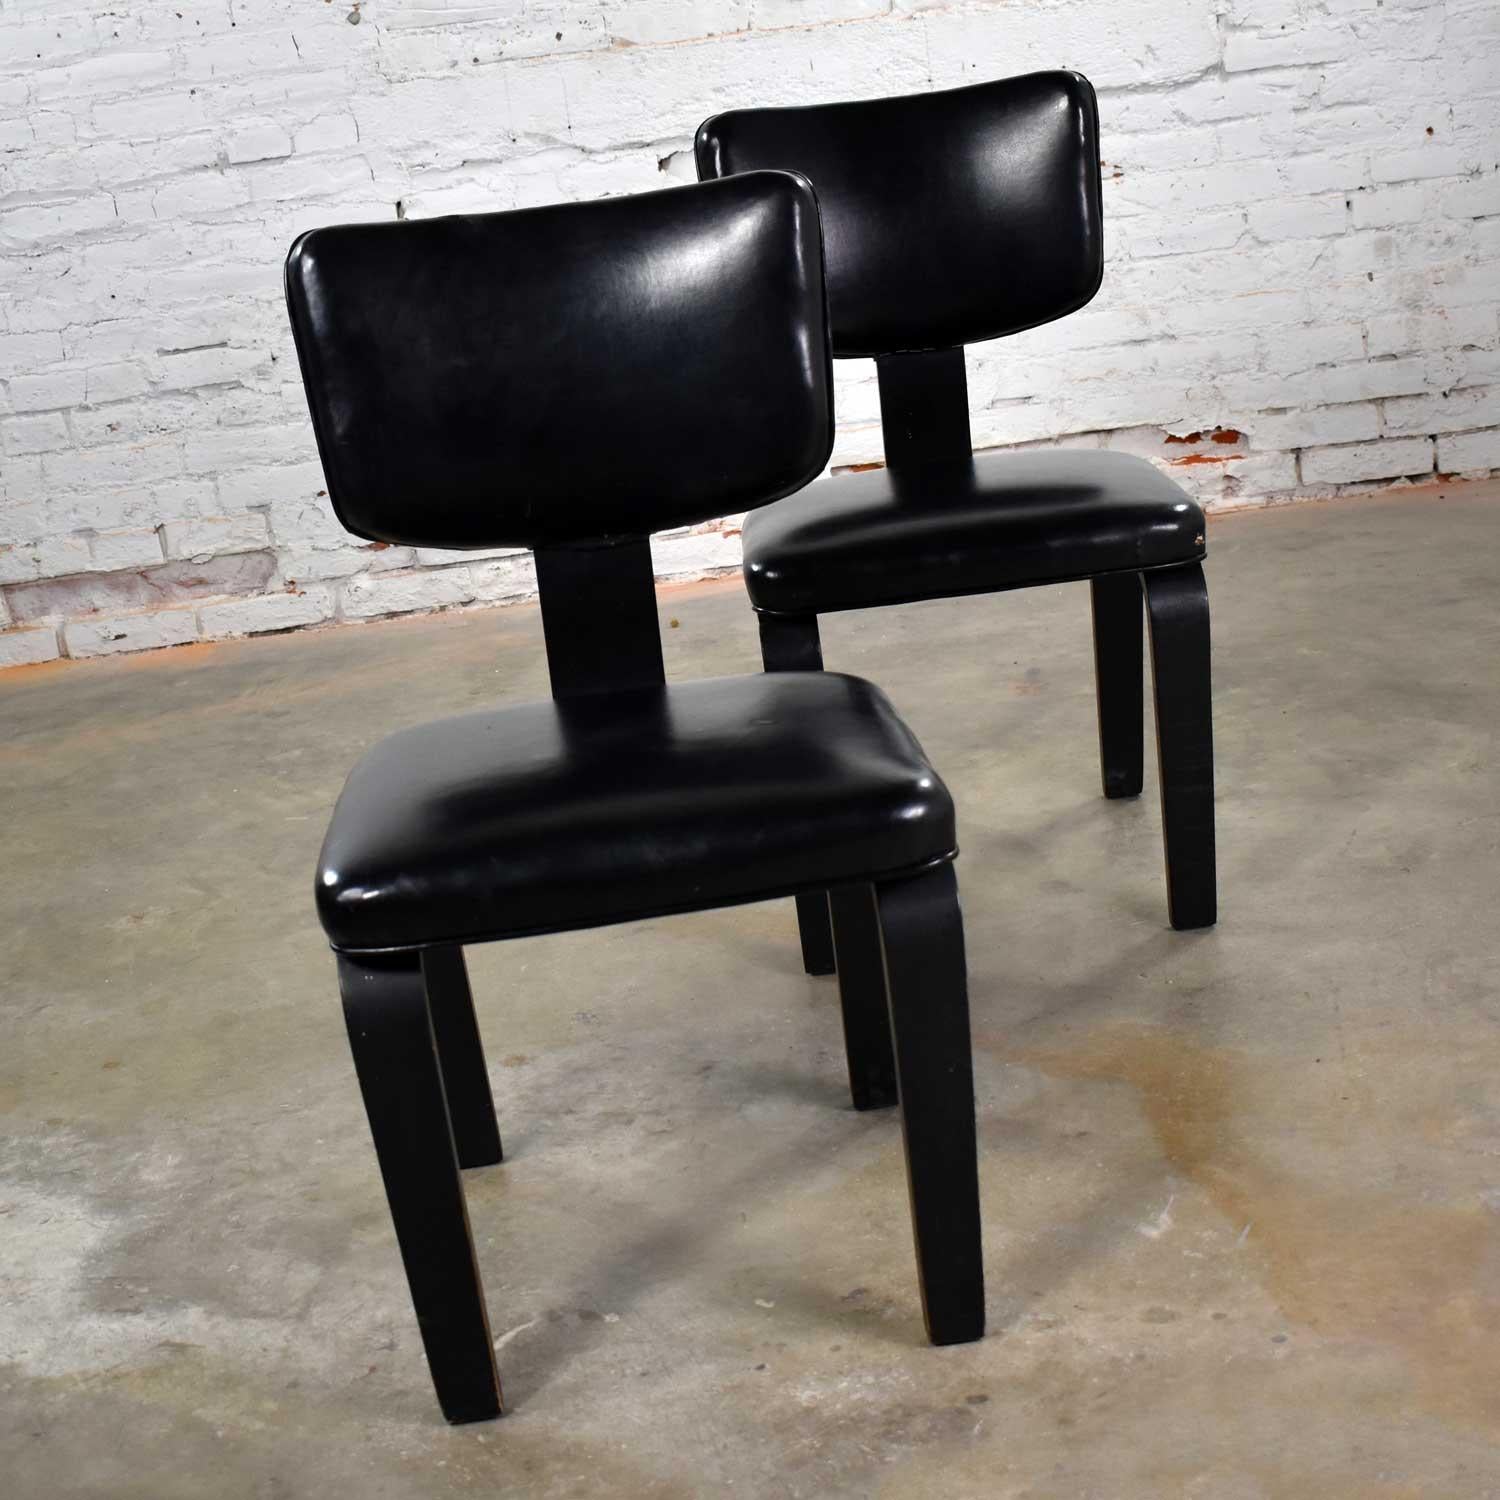 Belle paire de chaises Thonet en bois courbé, de style moderne du milieu du siècle, en noir avec revêtement en vinyle noir. Ils sont en bon état vintage. Le vinyle a quelques coupures et entailles. Le bois peint en noir présente une usure et une